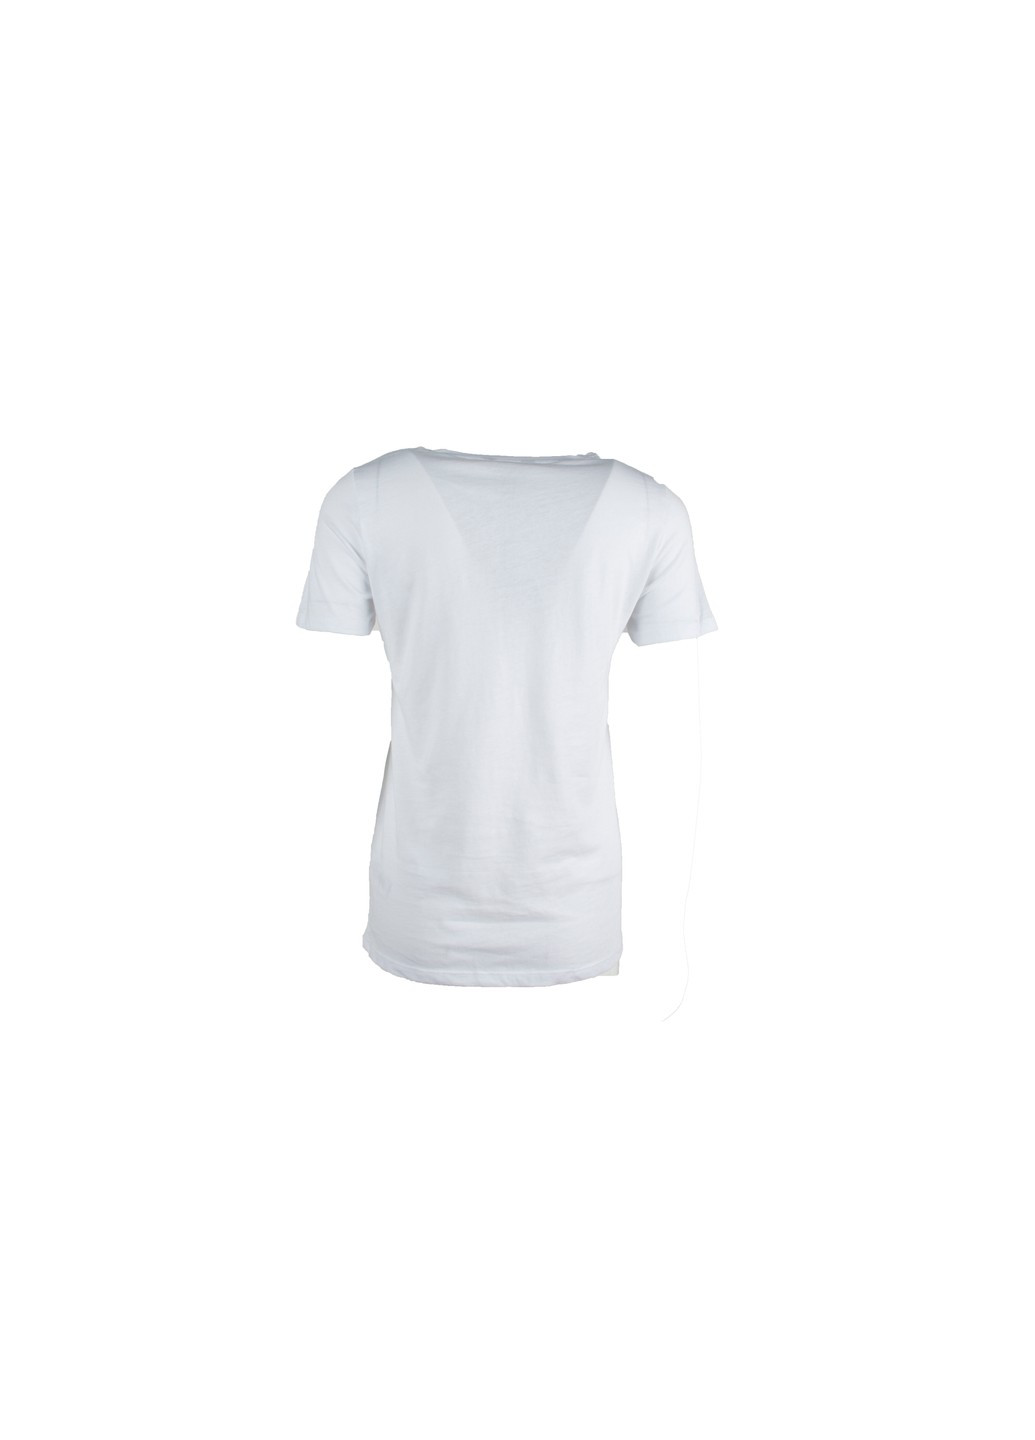 Белая футболка женская New Look